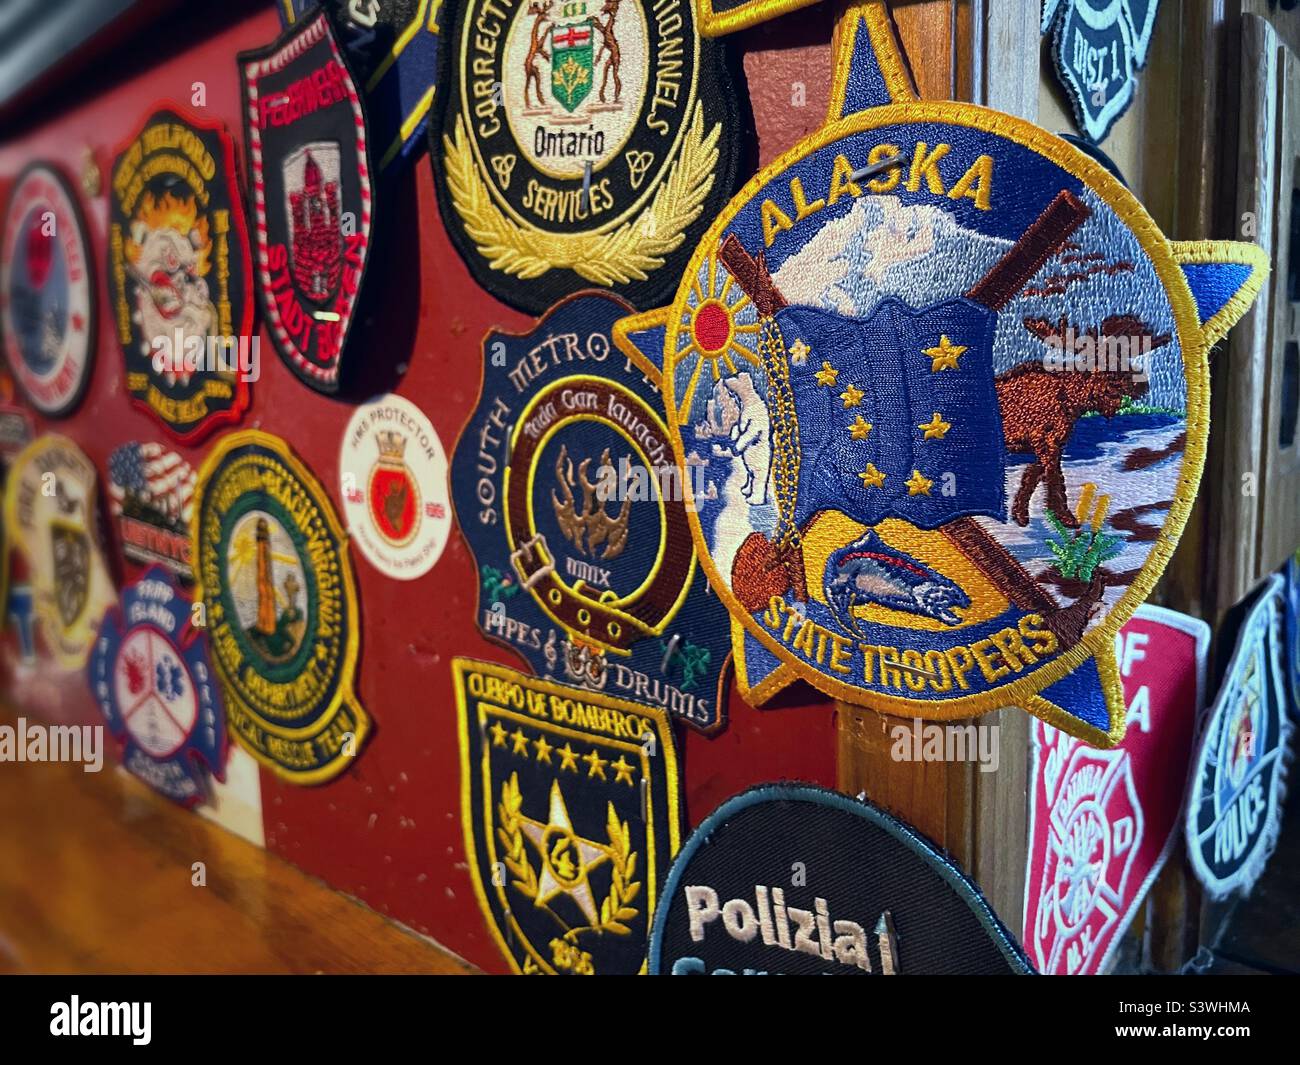 Les militaires et les premiers intervenants sont exposés au restaurant et pub de O’Hara près du Mémorial du 911 septembre dans le centre-ville de Manhattan, en 2022, à New York, aux États-Unis Banque D'Images